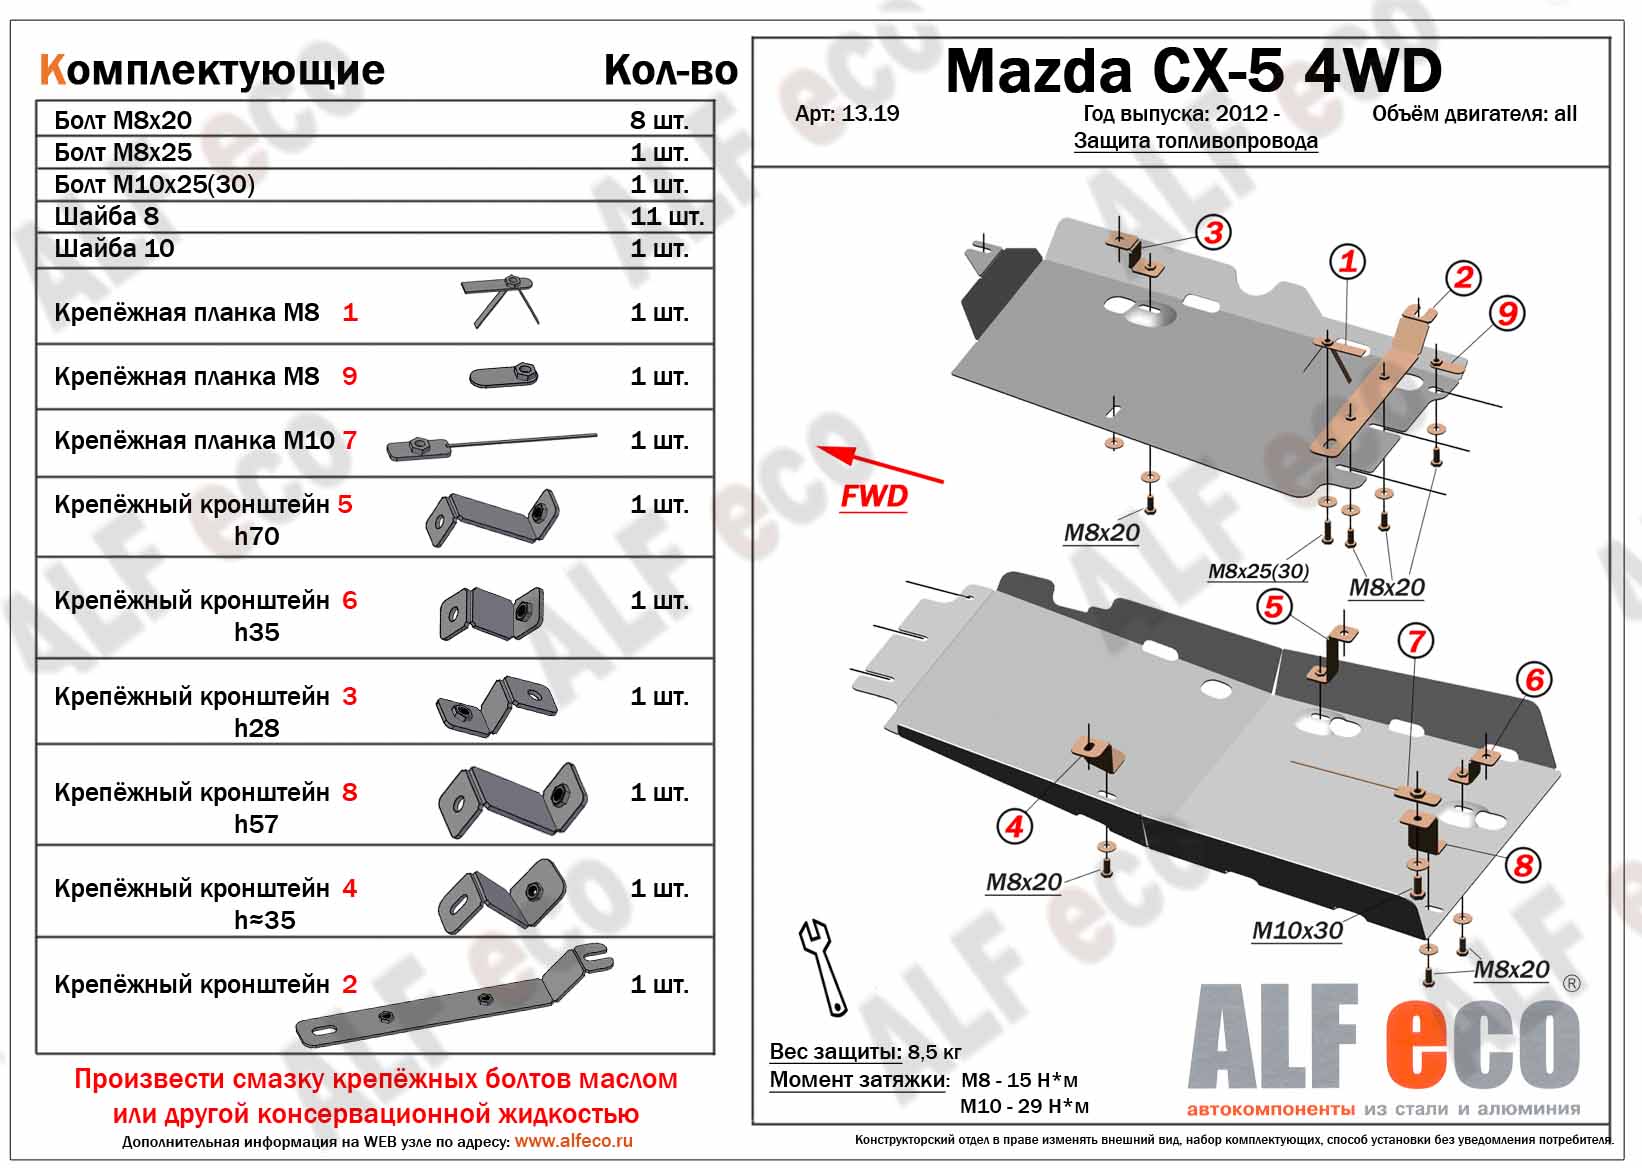 Mazda CX-5 (2012-) защита топливопровода 2мм